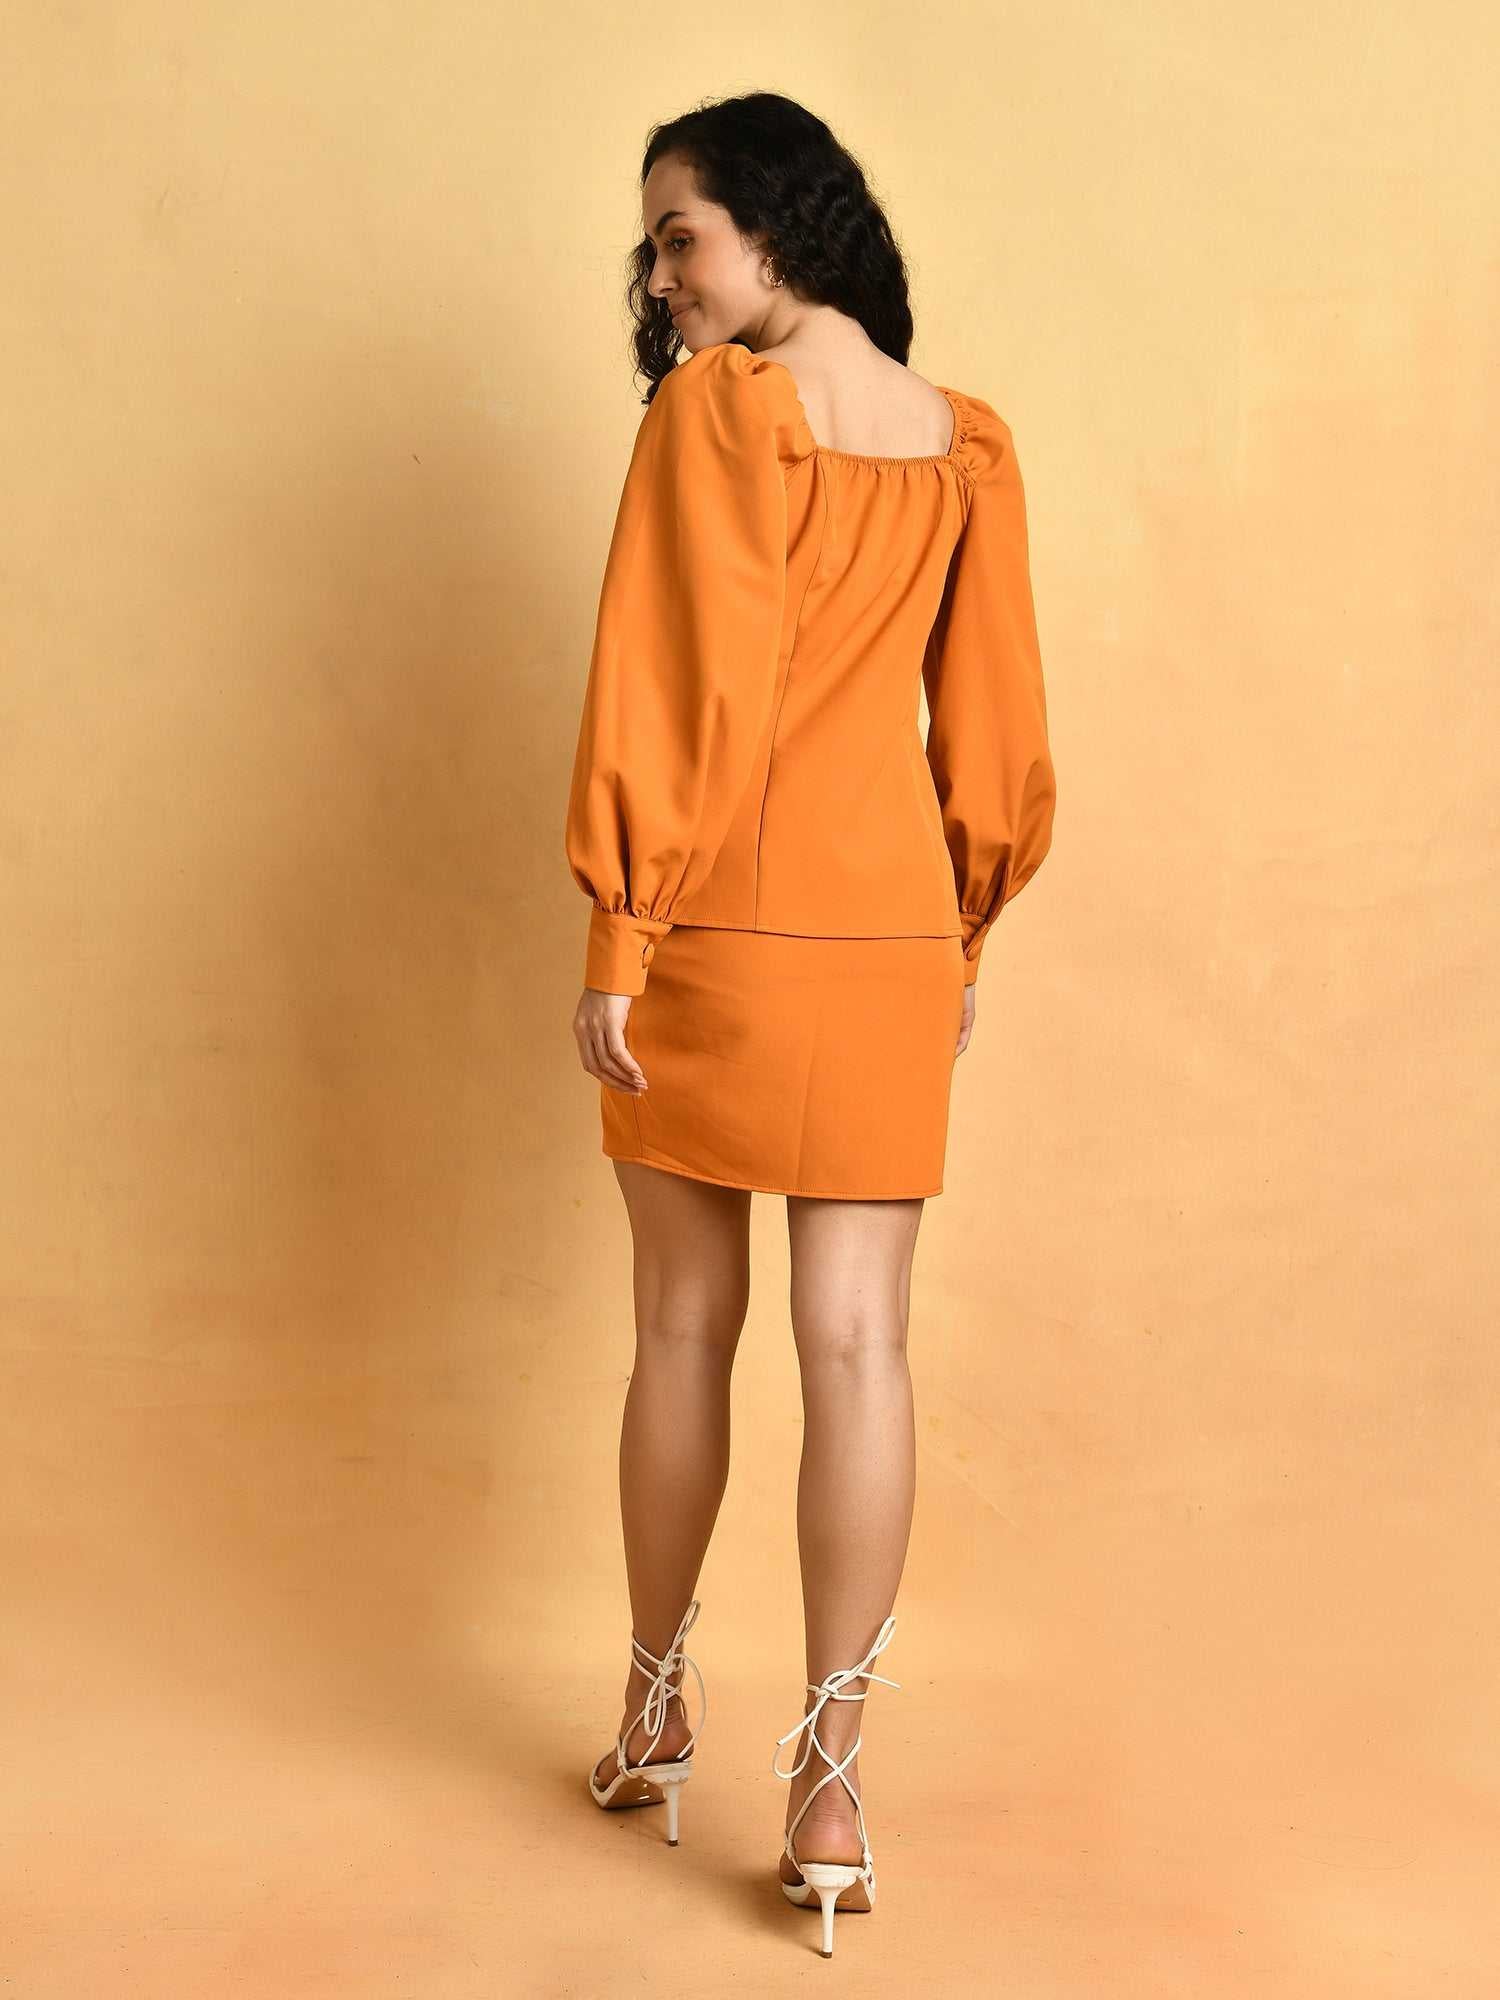 tangerine blazer skirt cord set